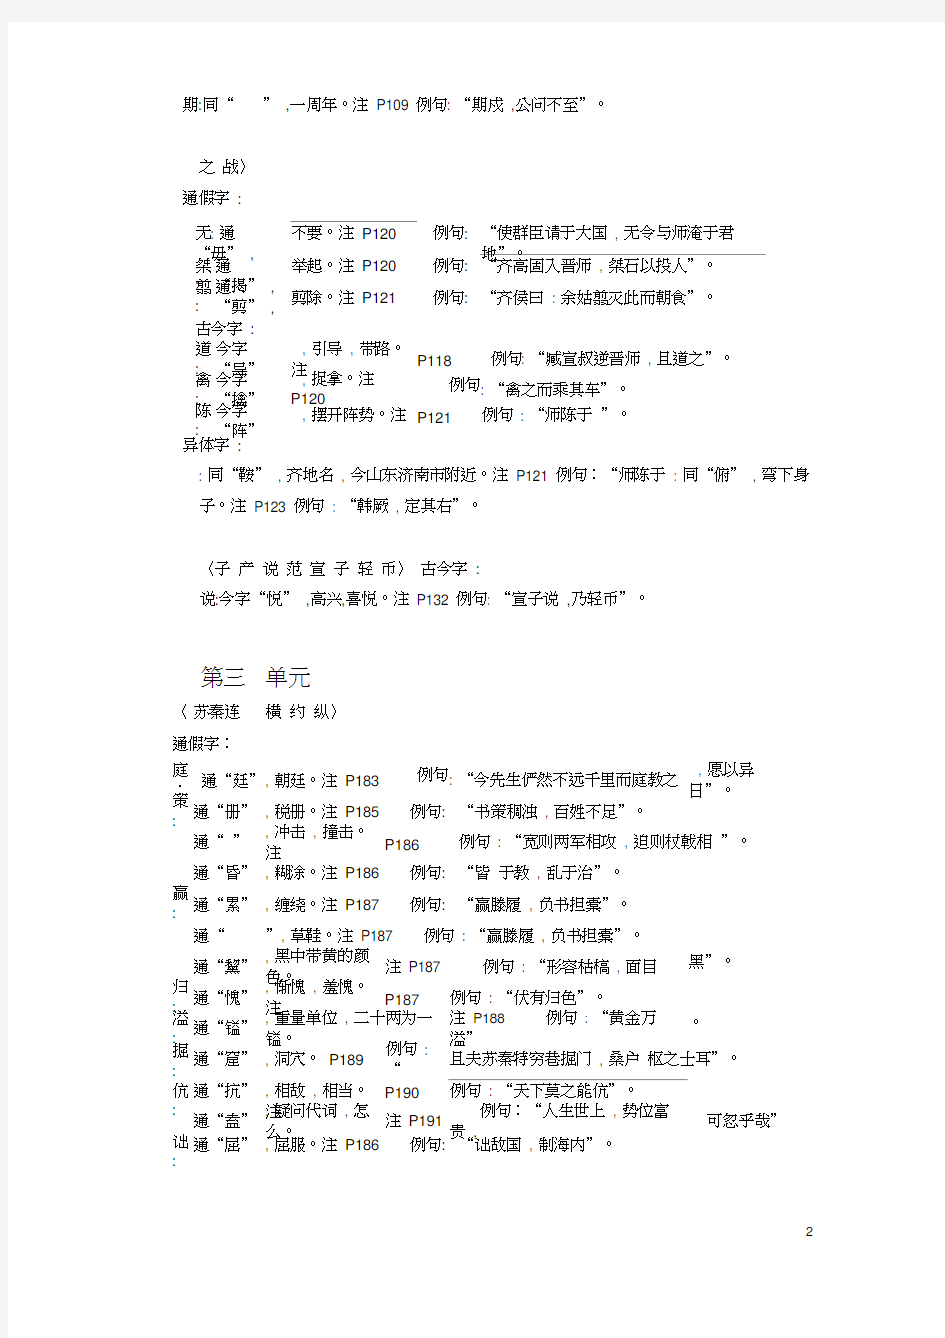 (完整版)古代汉语通假字、古今字、异体字总结